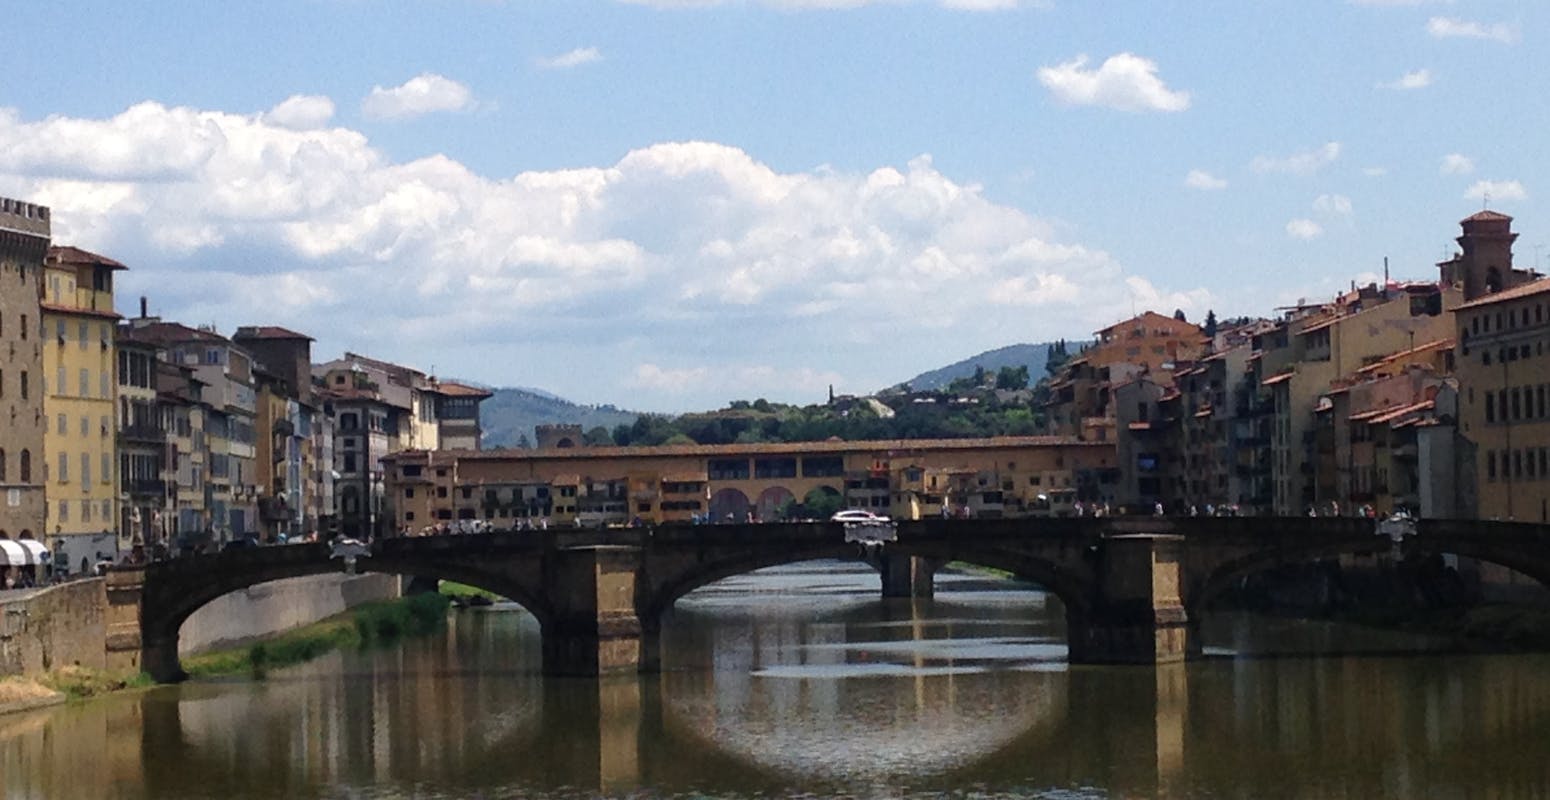 Esperienza Biscioni Gioielli unica per Ponte Vecchio